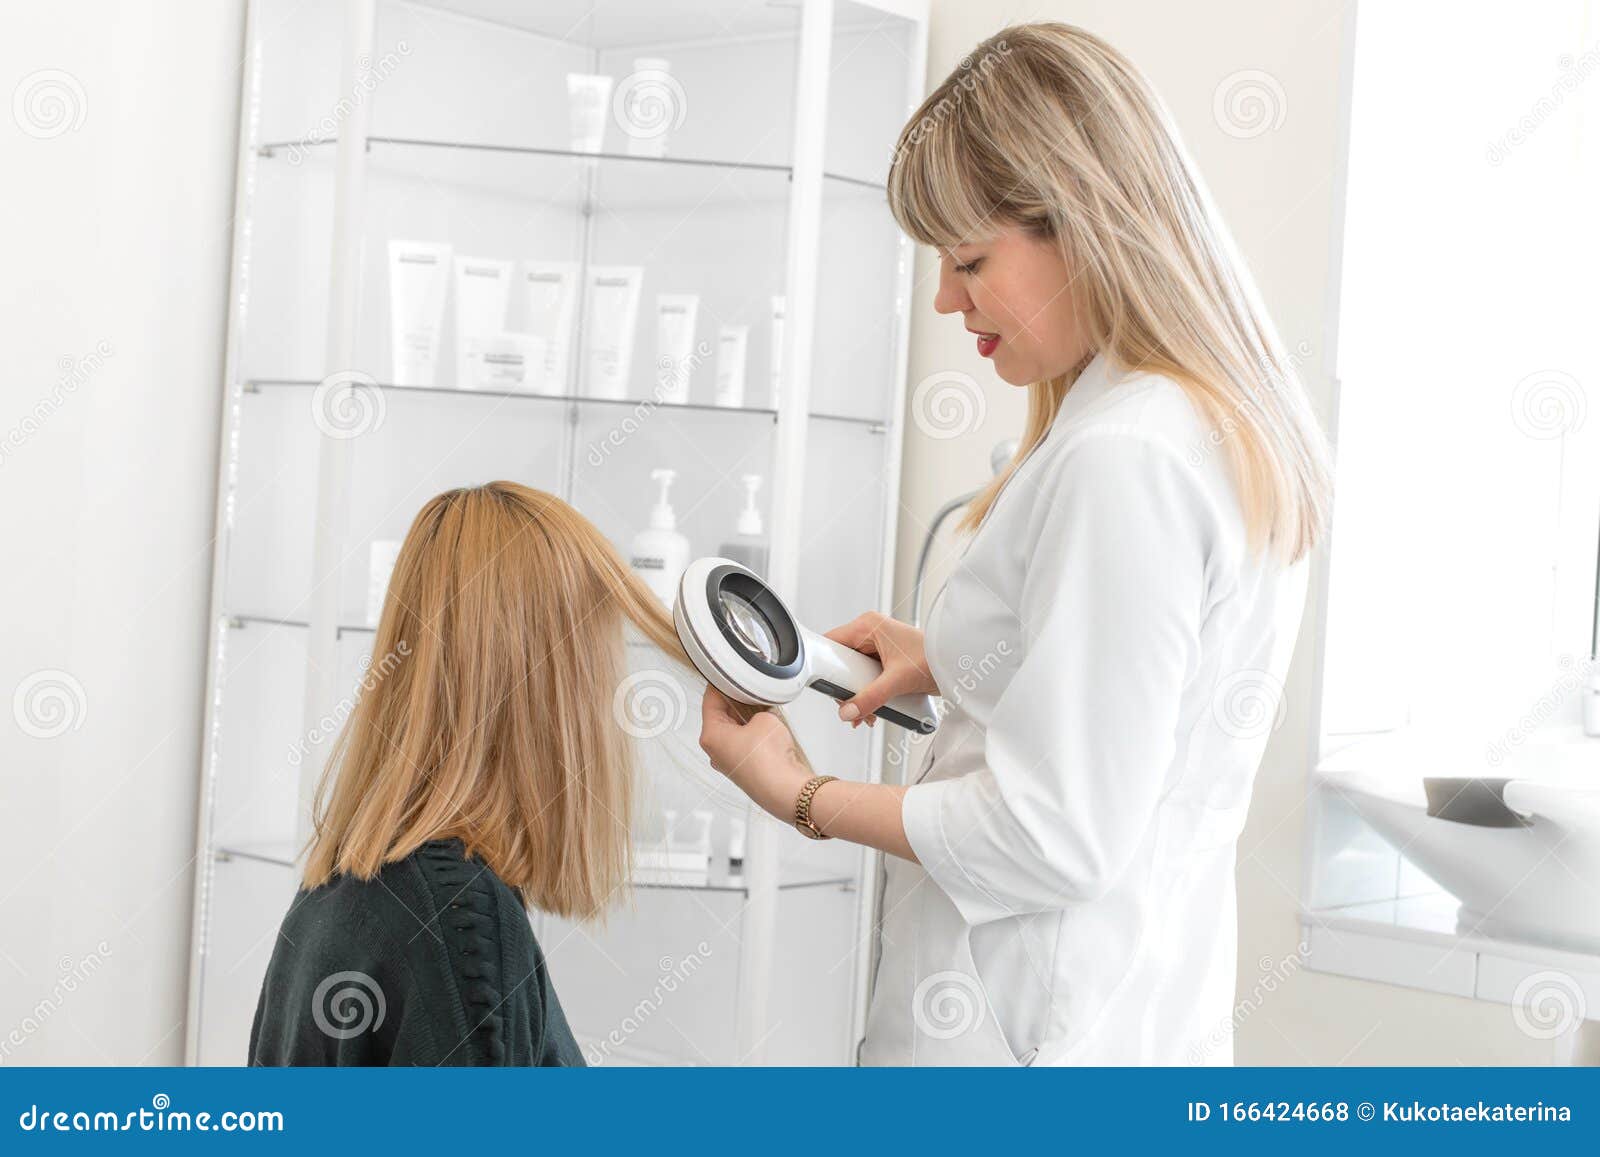 天花粉学家用皮肤镜检查患者头发的状况在明亮的美容室库存照片 图片包括有美容师 皮肤病学家 患者